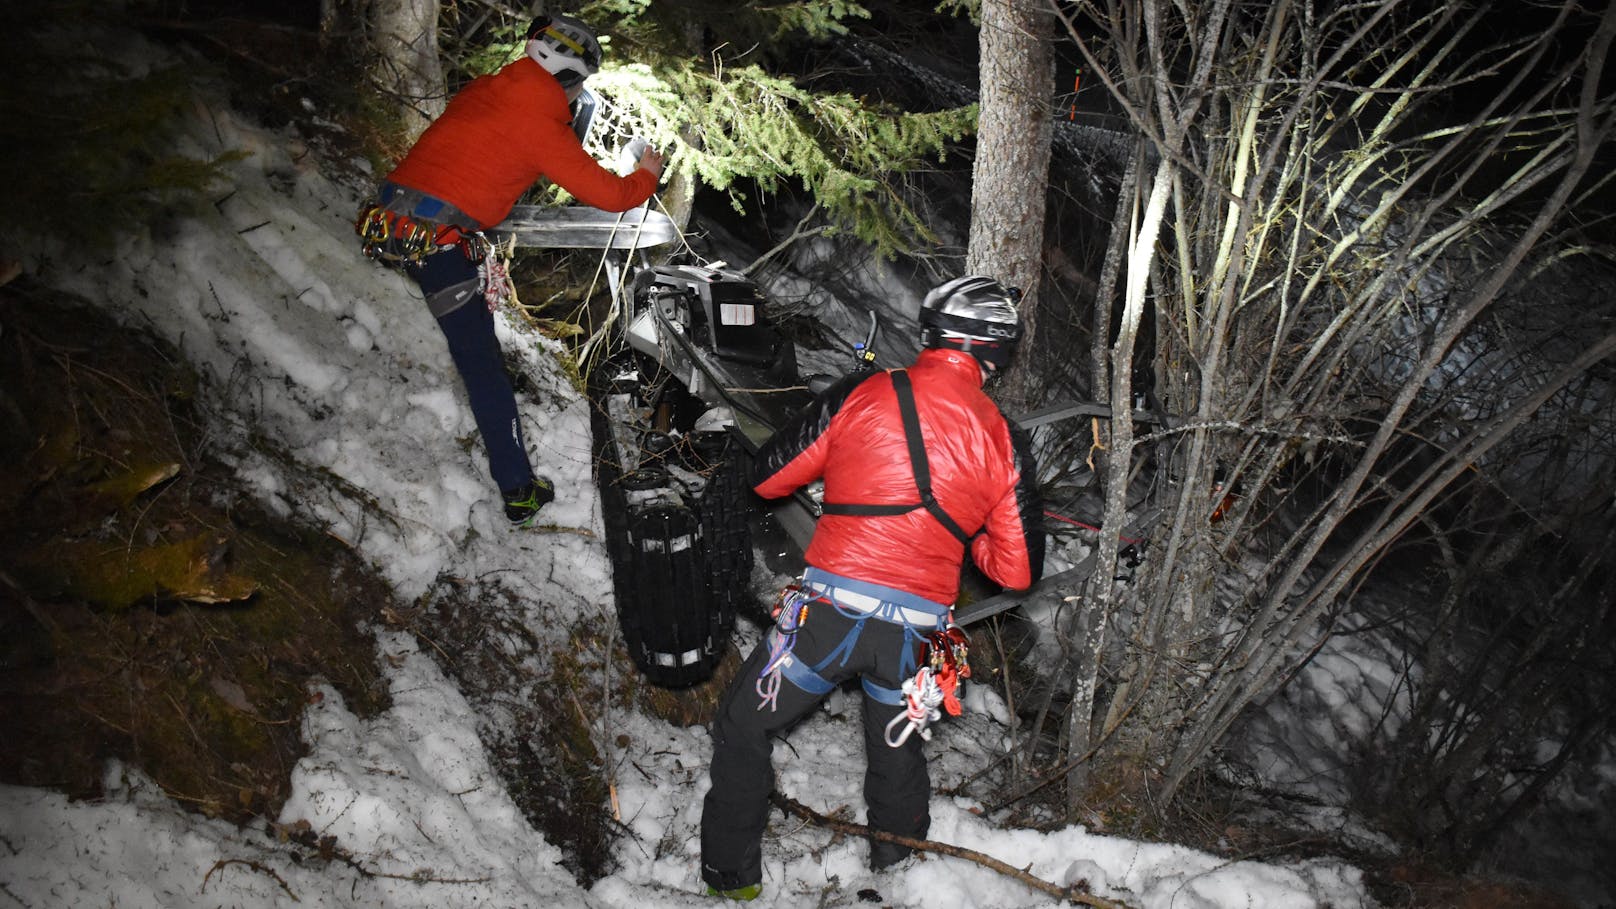 Mit Ski-Doo abgestürzt – 2 Urlauber schwer verletzt